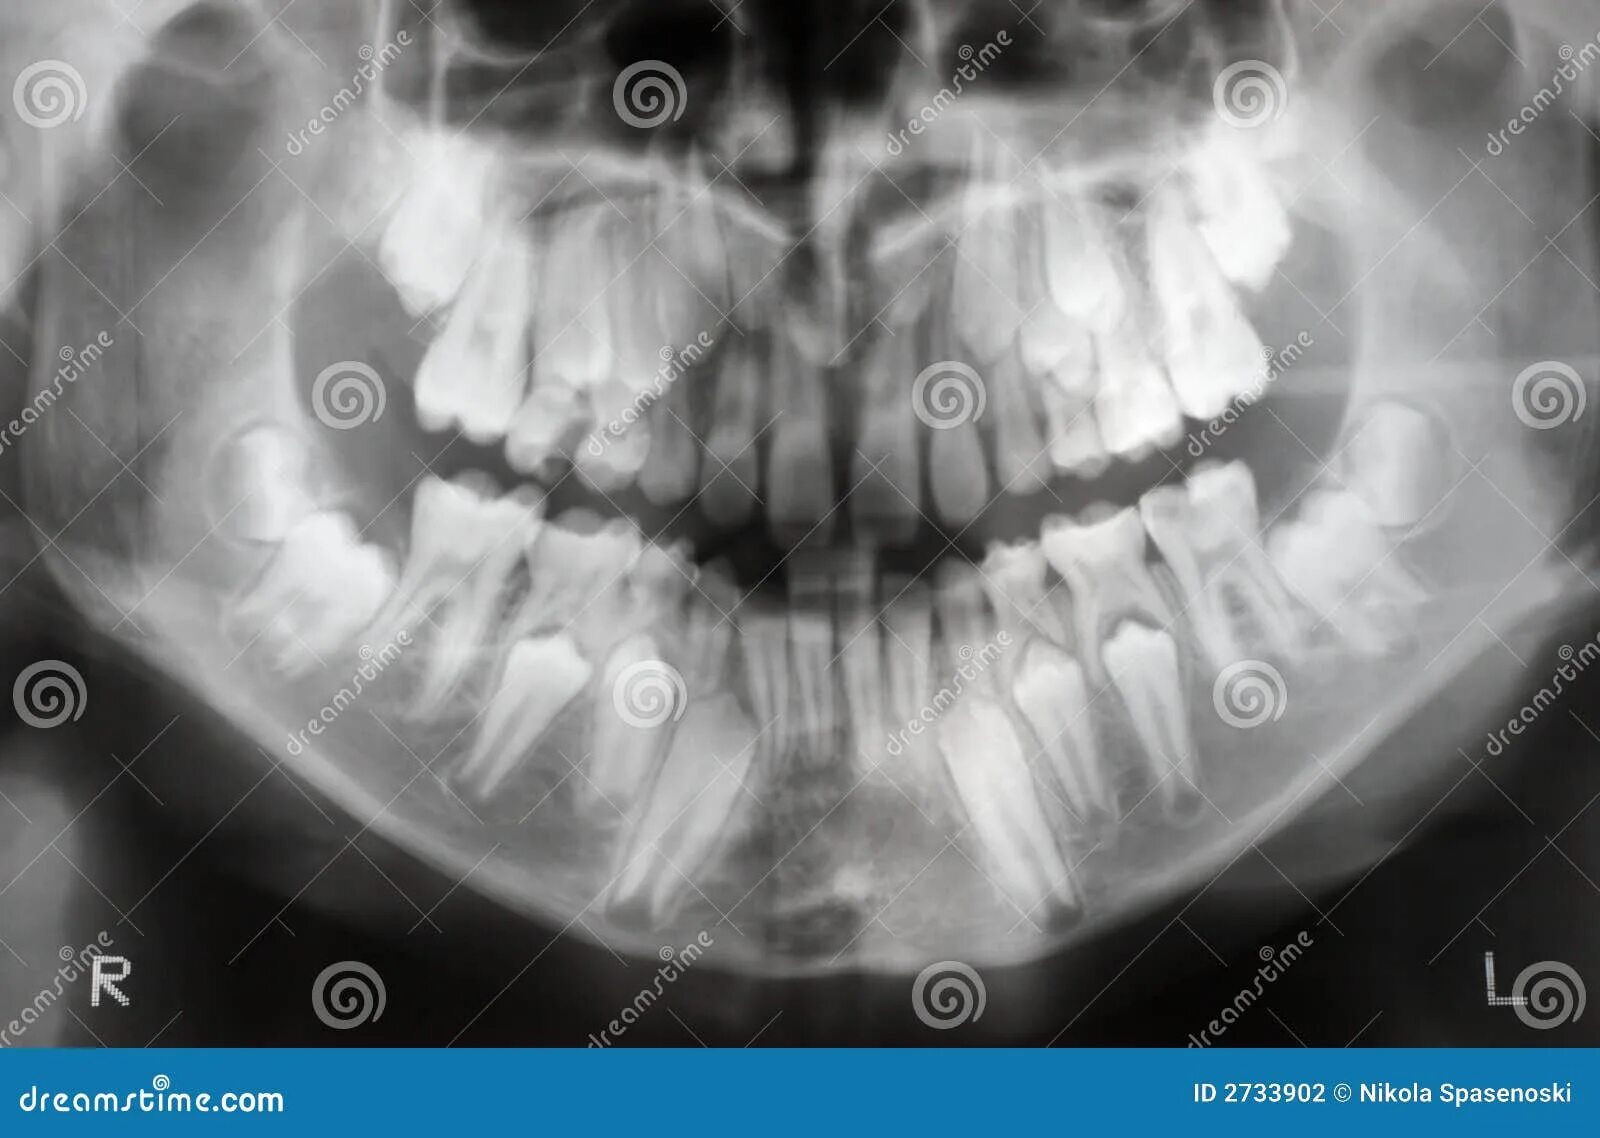 Детский череп рентген. Экзостоз кости челюсти. Смена молочных зубов у детей рентген. Экзостоз верхней челюсти рентген. Снимок черепа ребенка с зубами.